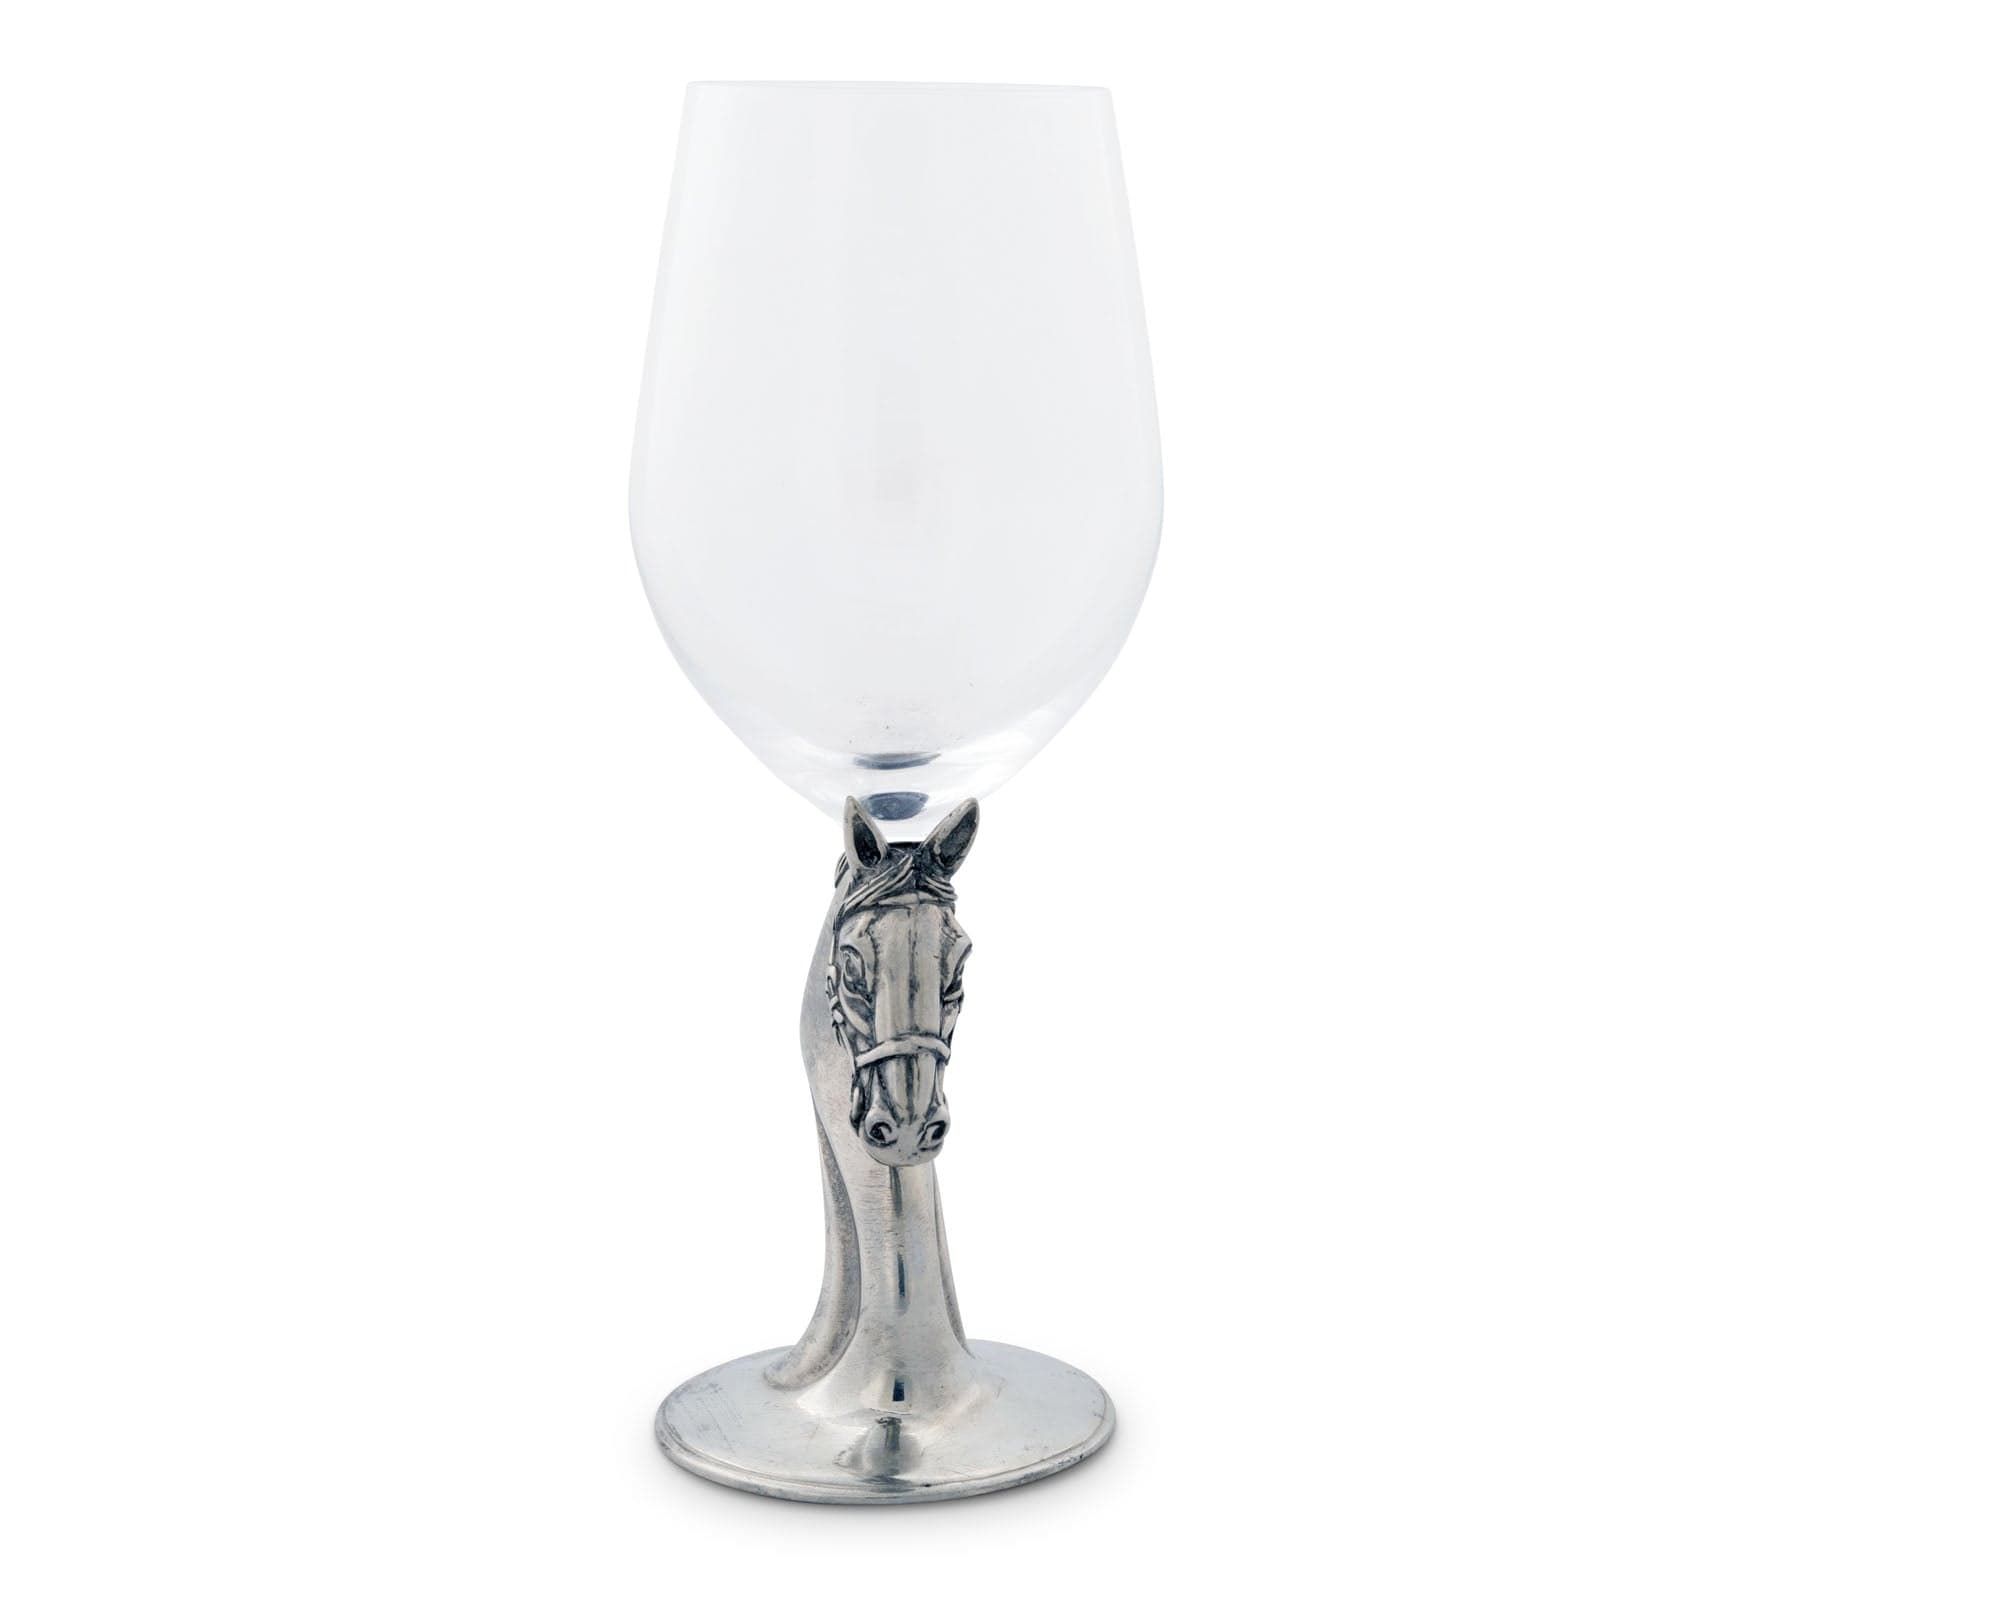 Govino 16oz Wine Glasses - 4pack – White Horse Wine and Spirits